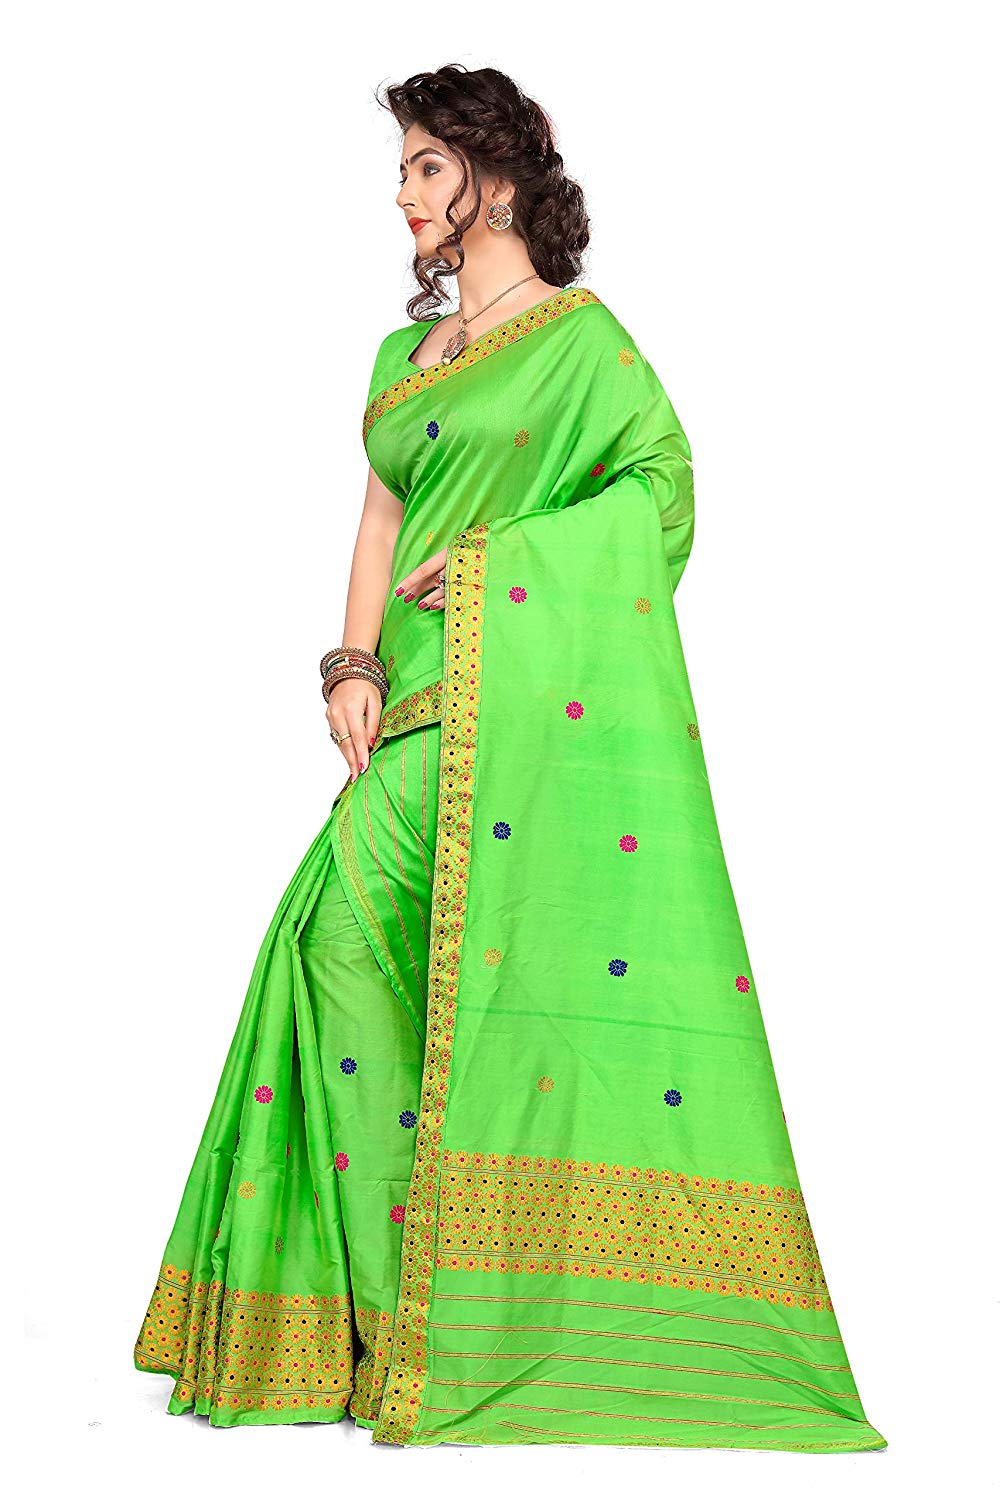 Mekhela chadar Saree| Assamese Mekhela Chador Green - Best Product